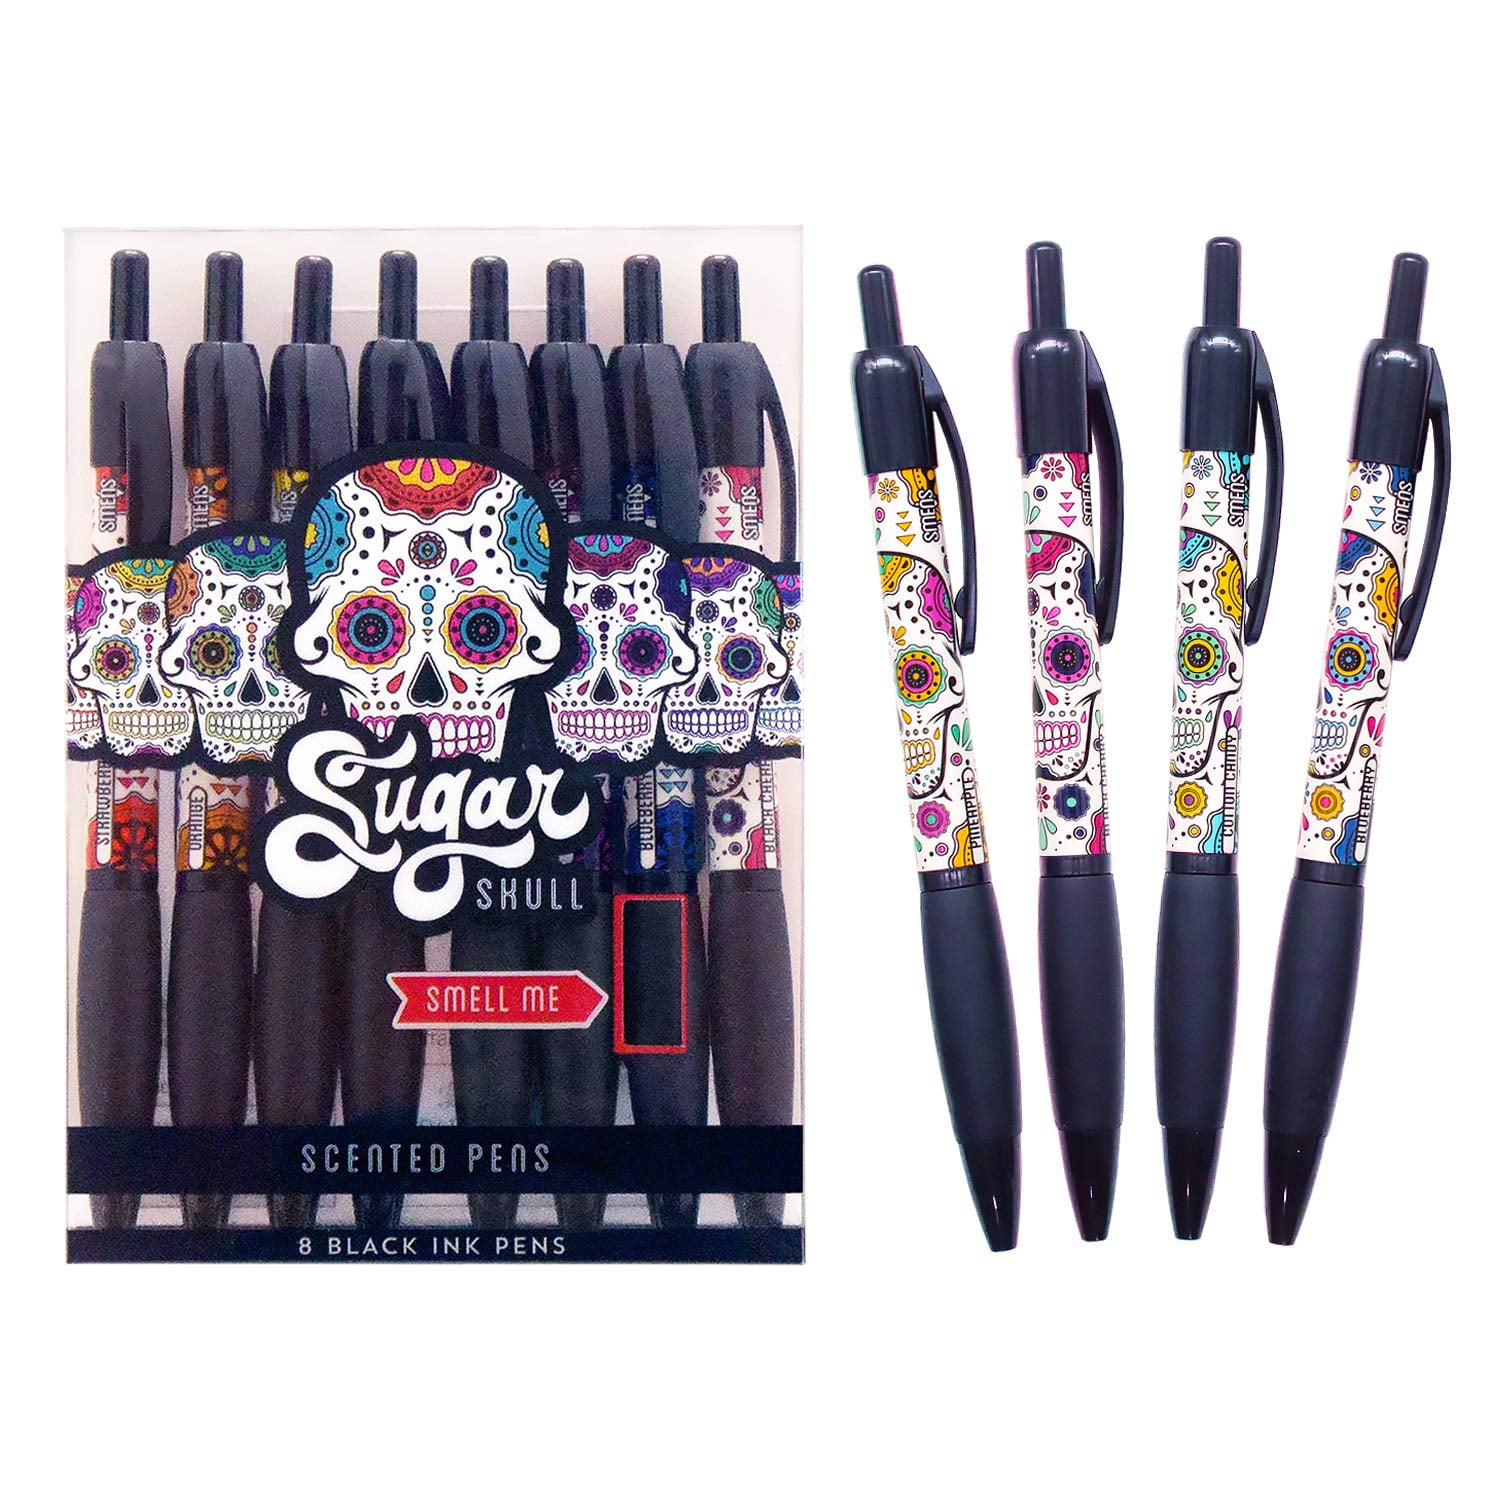 Scentco Tri-Color Smens- Scented Pens, 4 Count